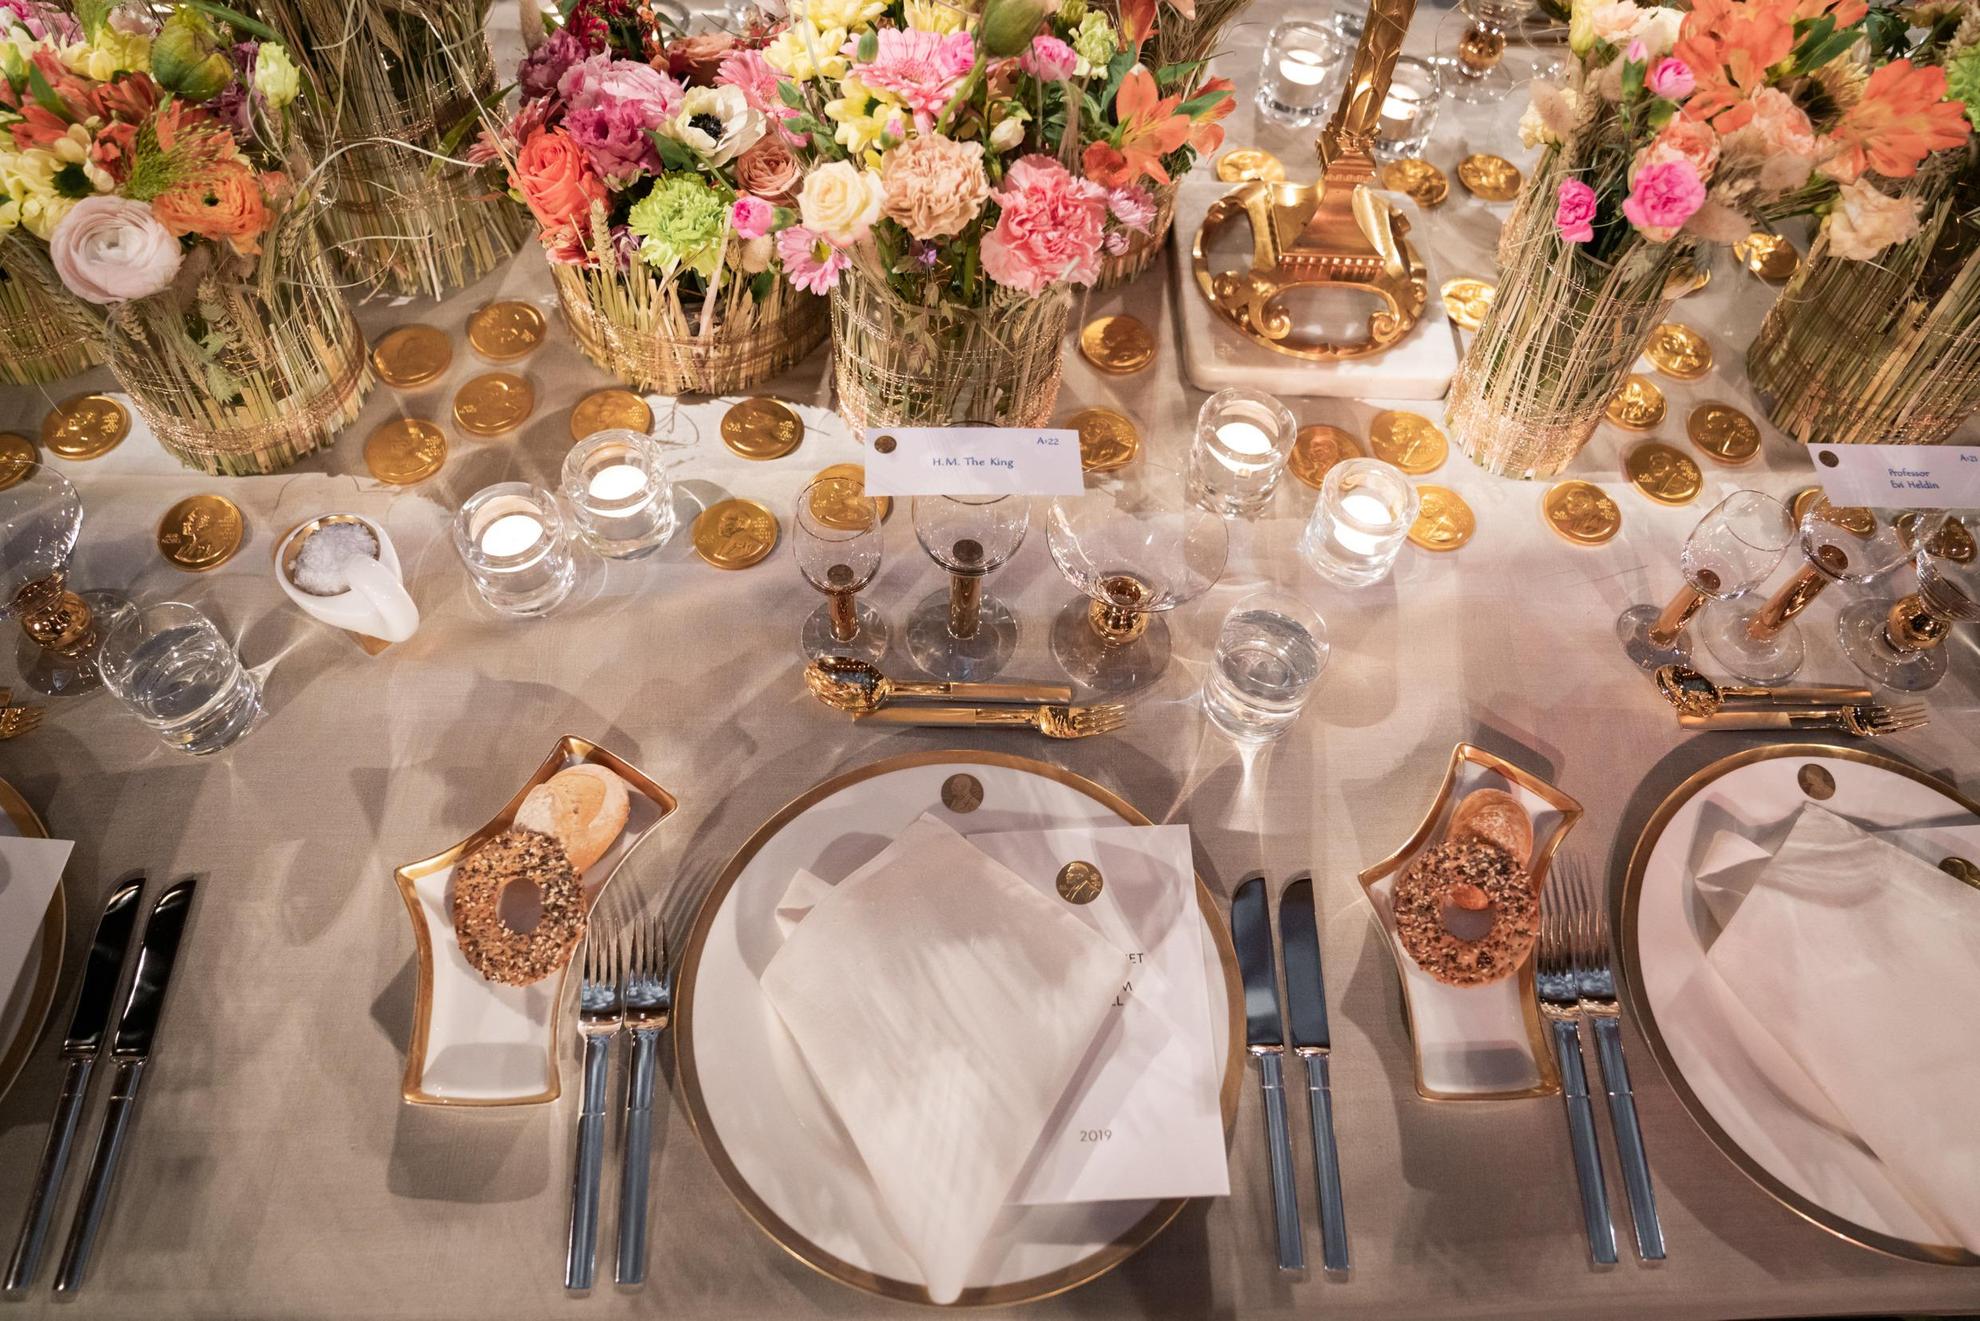 Une vaisselle blanche avec des détails dorés est posée sur une table avec une nappe blanche. Au milieu de la table se trouvent des fleurs colorées dans des vases.